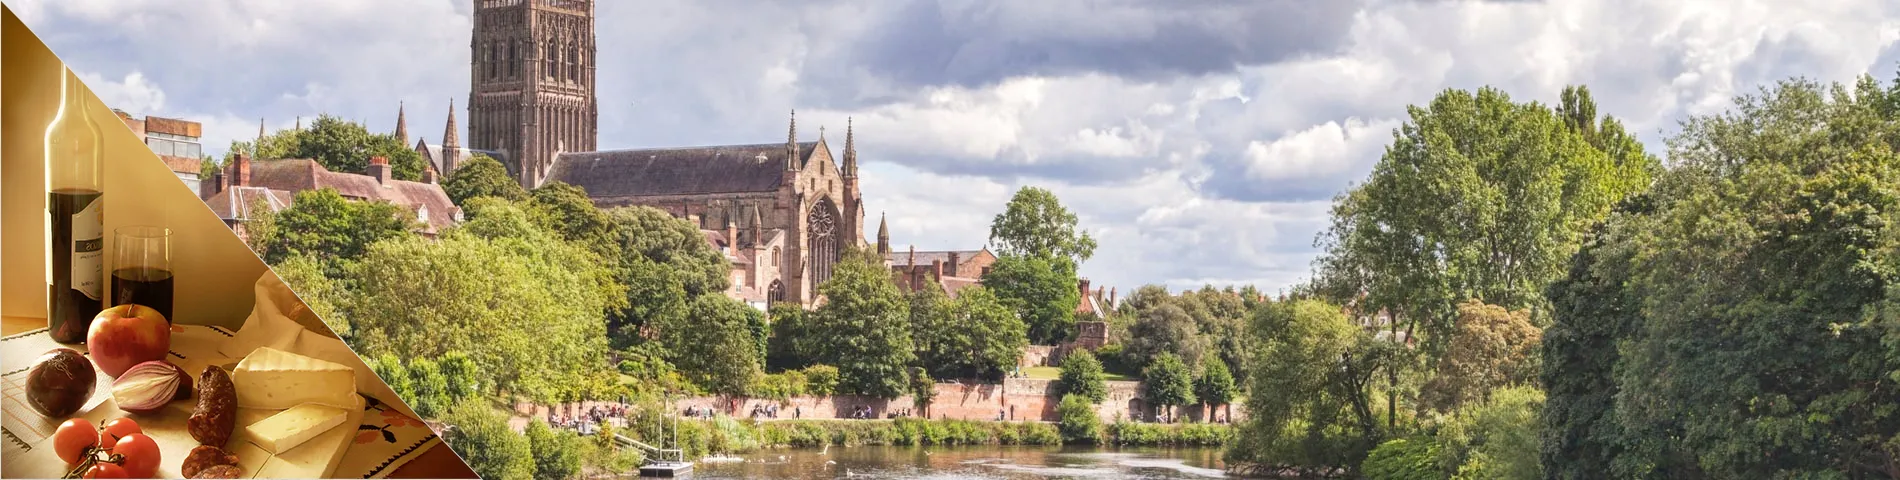 Worcester - Angličtina a Kultura